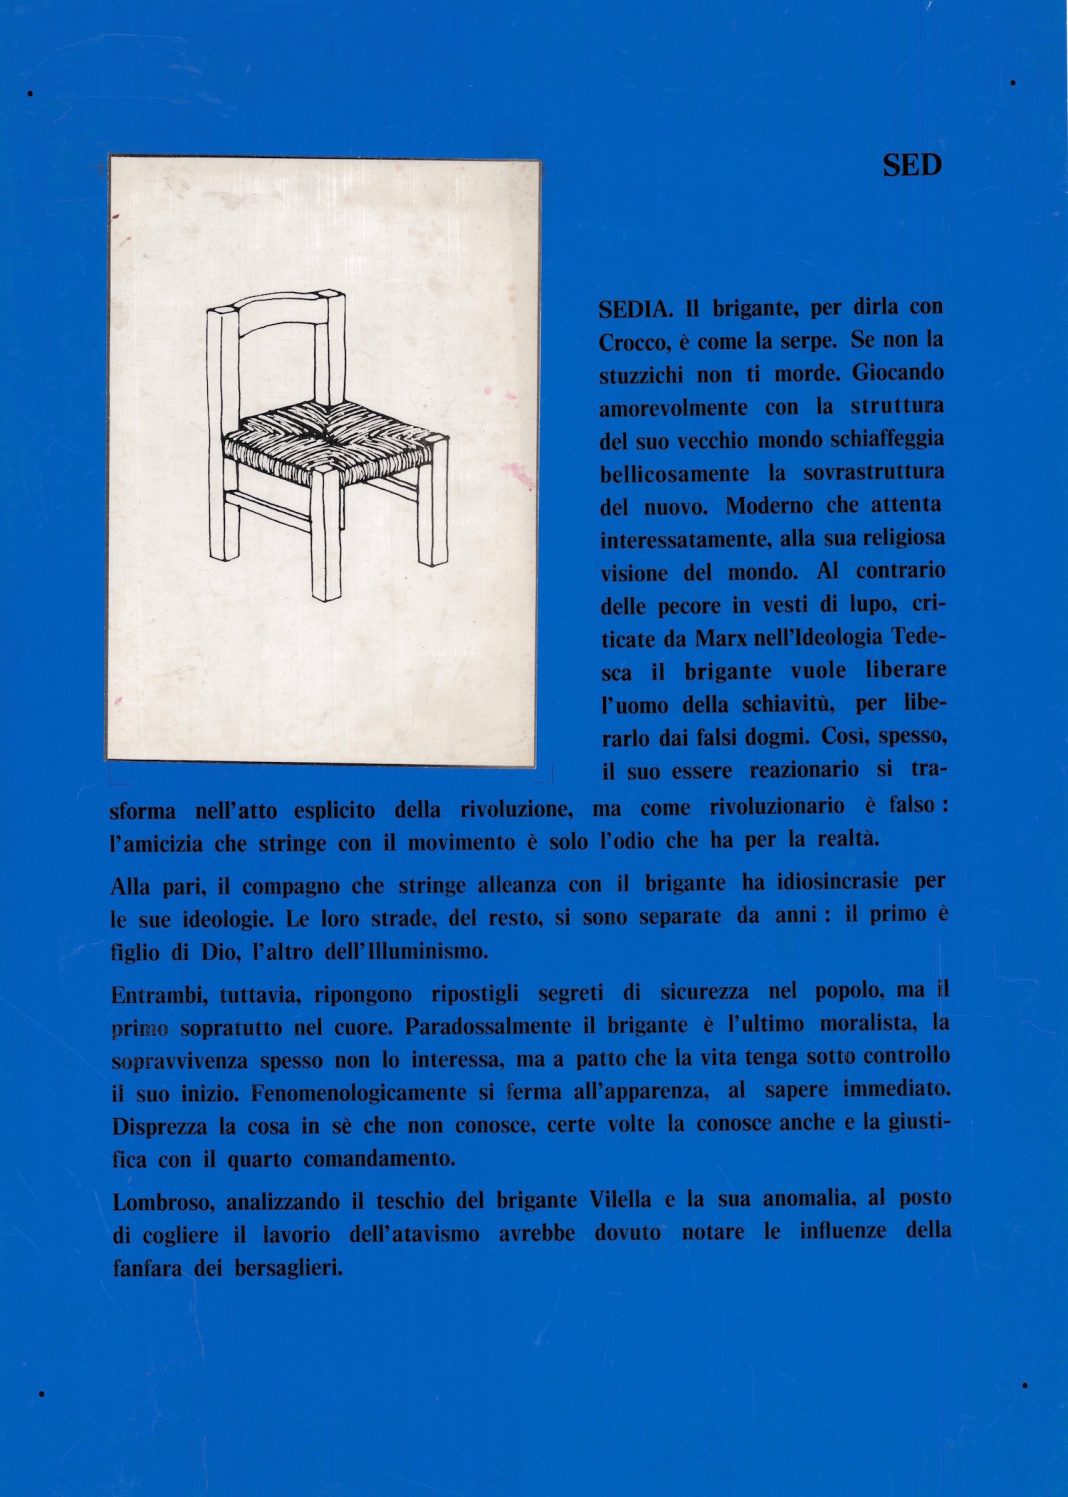 La casa editrice TRIEB 1970 – 1978. L’Accademia di Belle Arti di Brera risponde a Art & Languagehttps://www.exibart.com/repository/media/formidable/11/Sed-casa-editrice-TRIEB-1970-1978-stampa-offset-70-x-50-cm-1068x1497.jpg